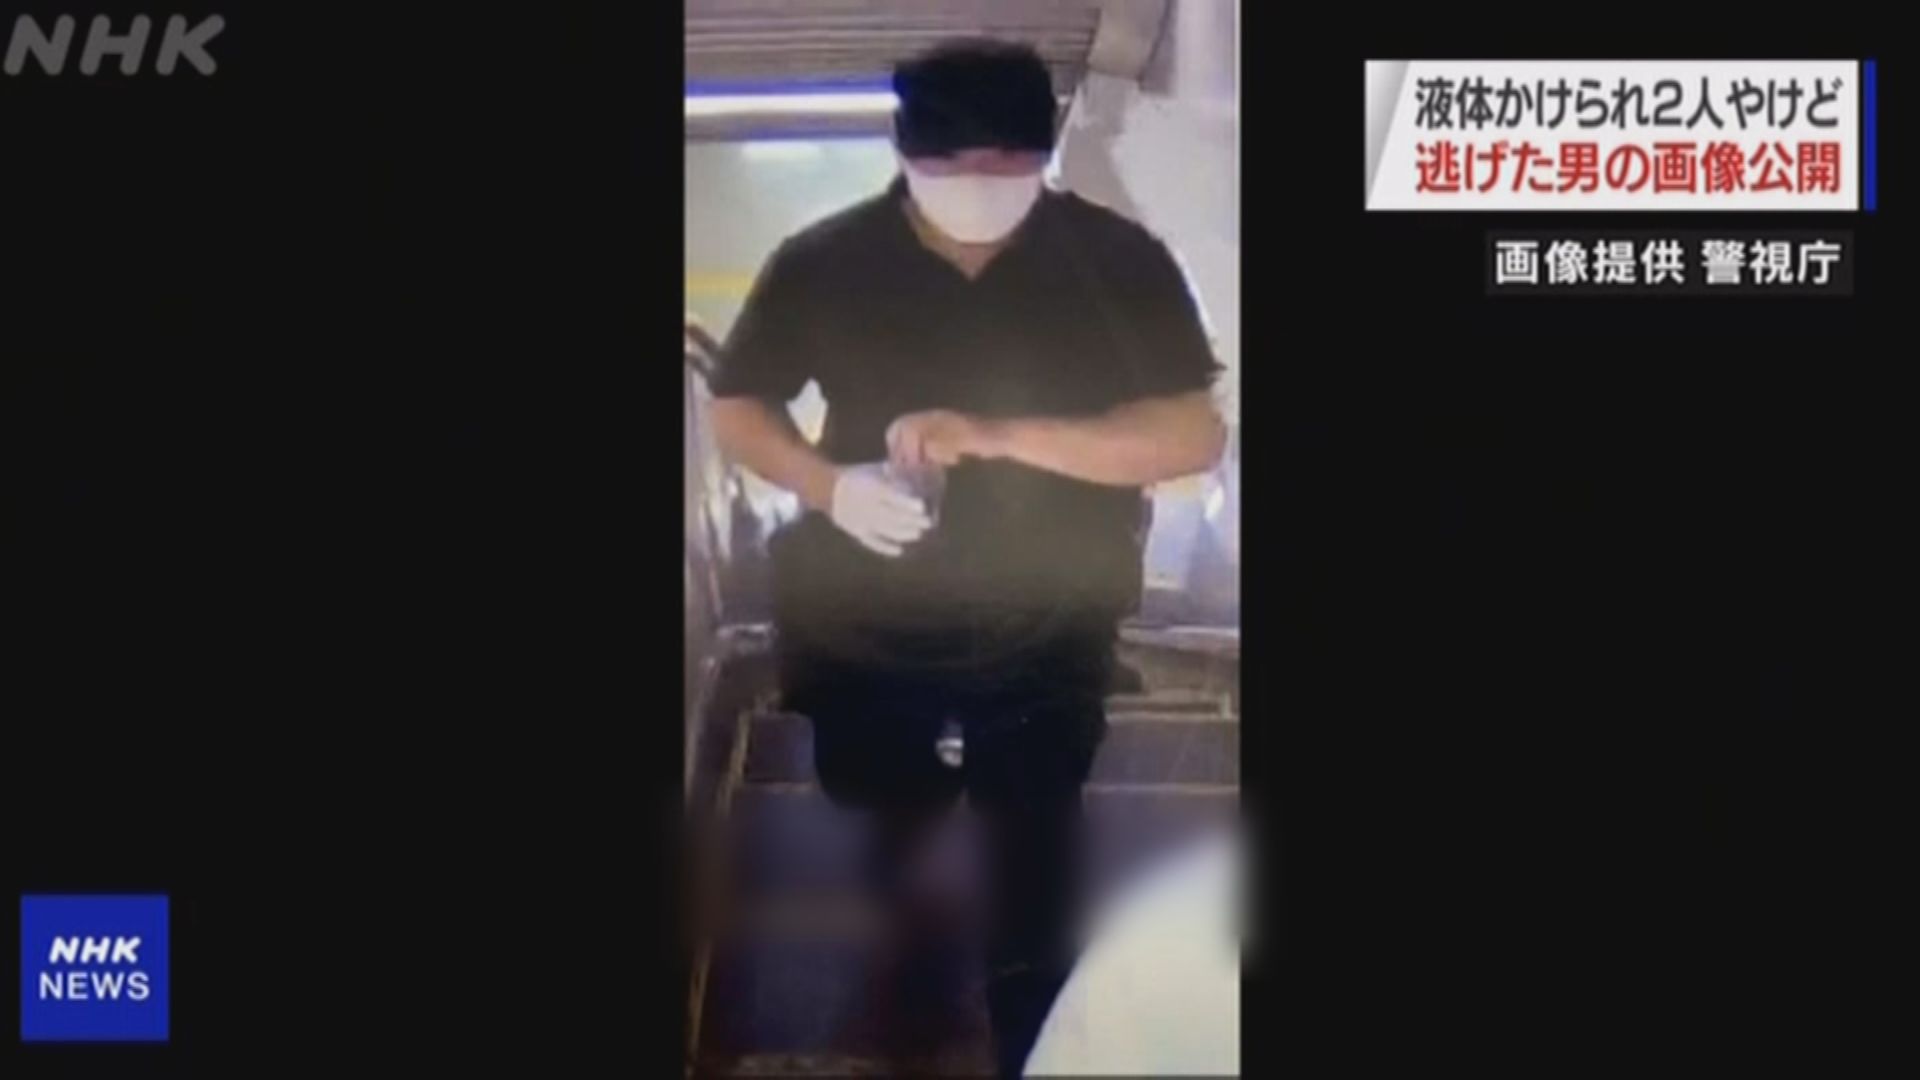 東京地鐵站內男子潑灑疑似硫酸致兩人受傷